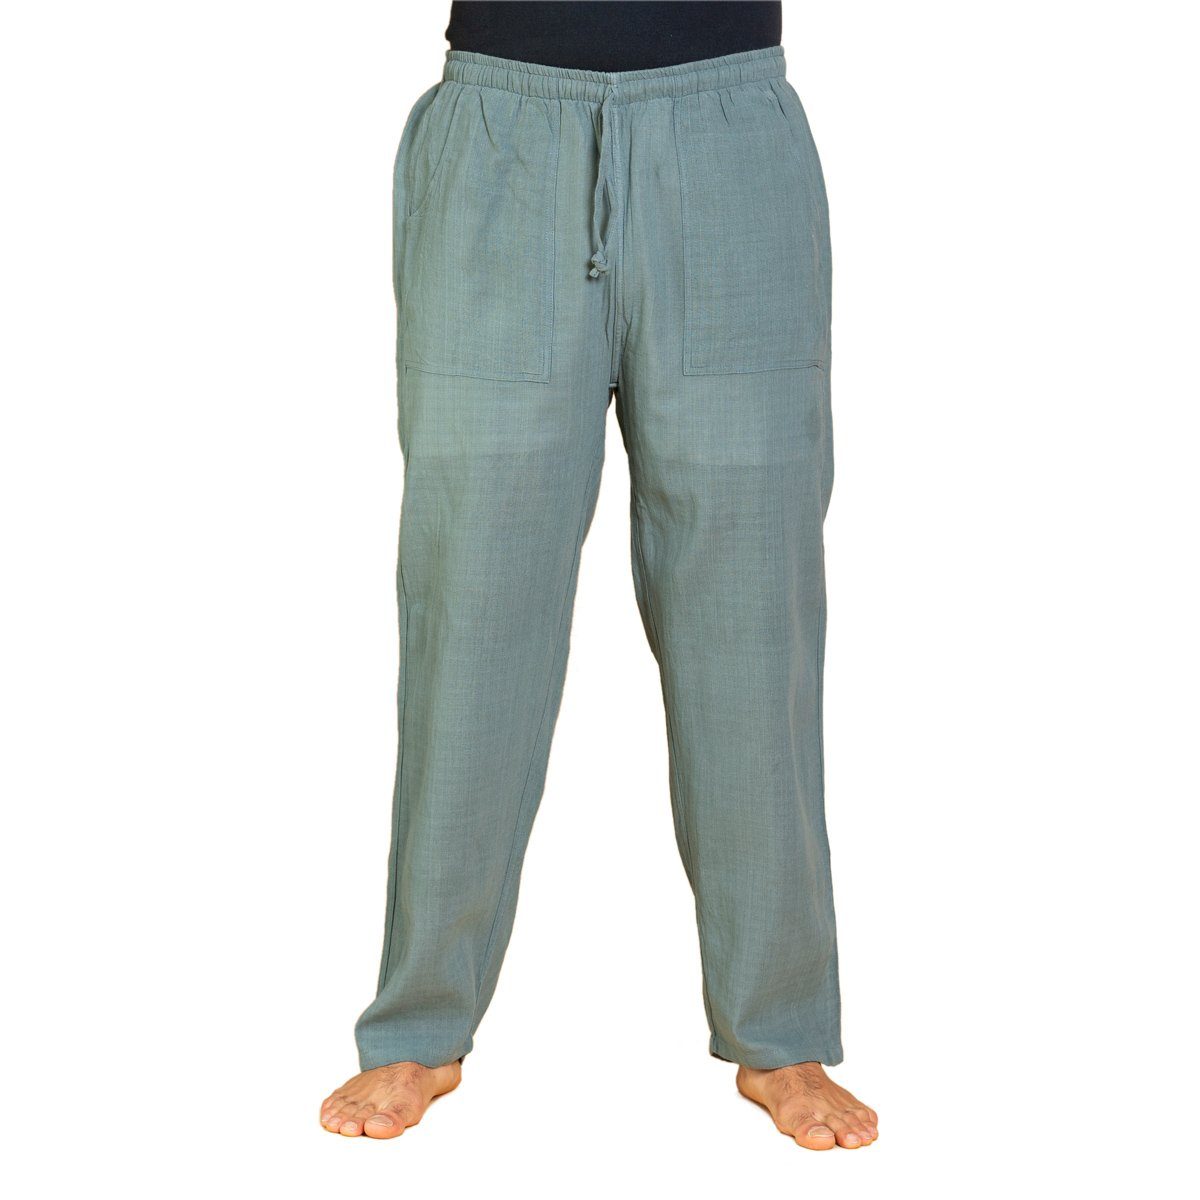 PANASIAM Wellnesshose Handgewebte Baumwollhose 'K' in verschiedenen Designs Freizeithose leger geschnitten Sommerhose Relaxhose grau